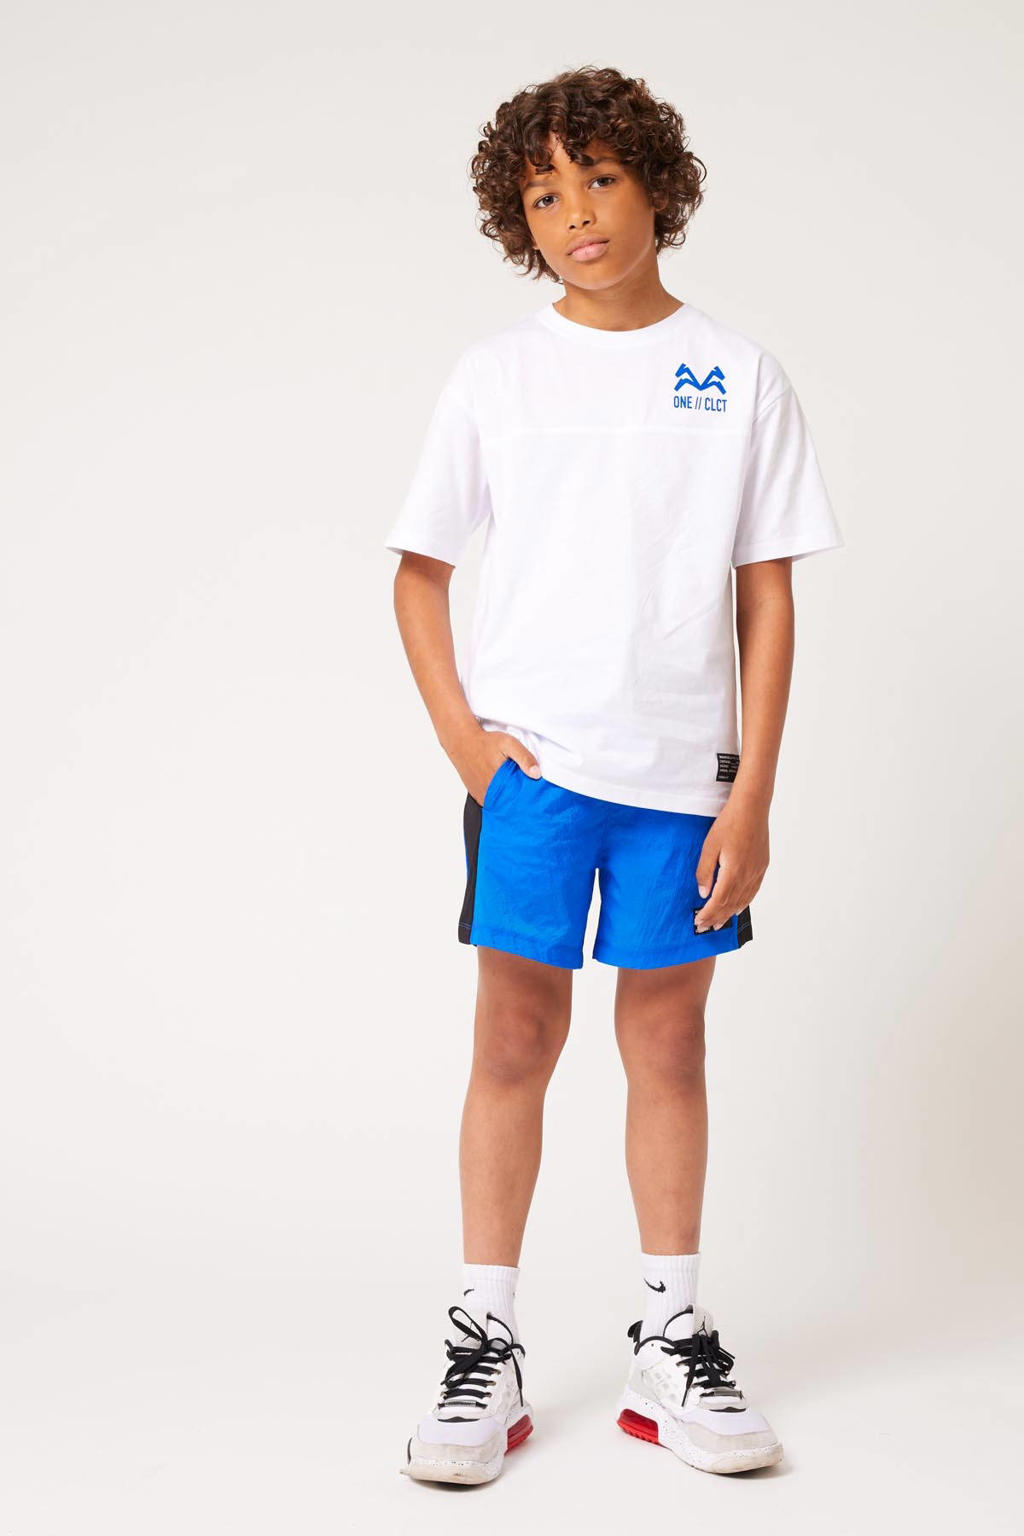 Wit en blauwe jongens CoolCat Junior T-shirt Eace CB van katoen met tekst print, korte mouwen en ronde hals